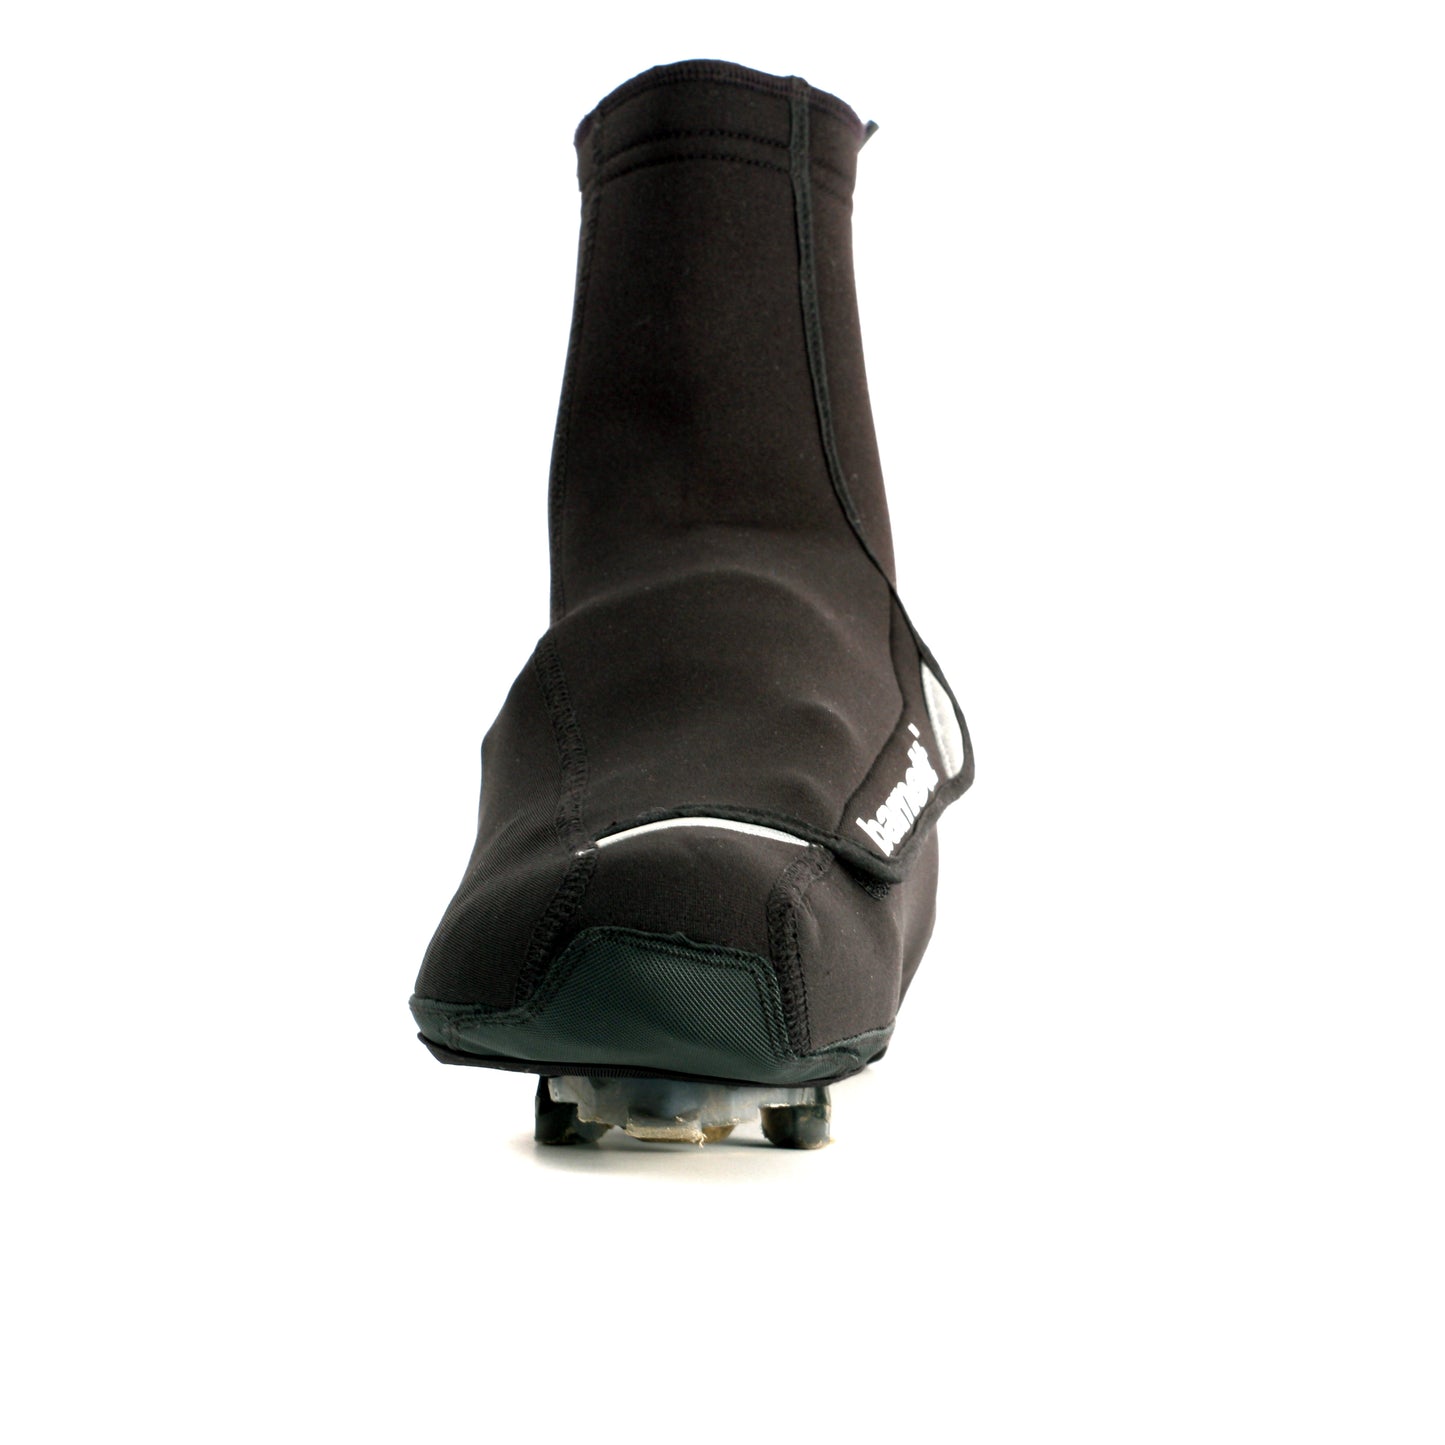 BSP-03 Cubre zapatillas, negro. Calientes y hidrófugos.